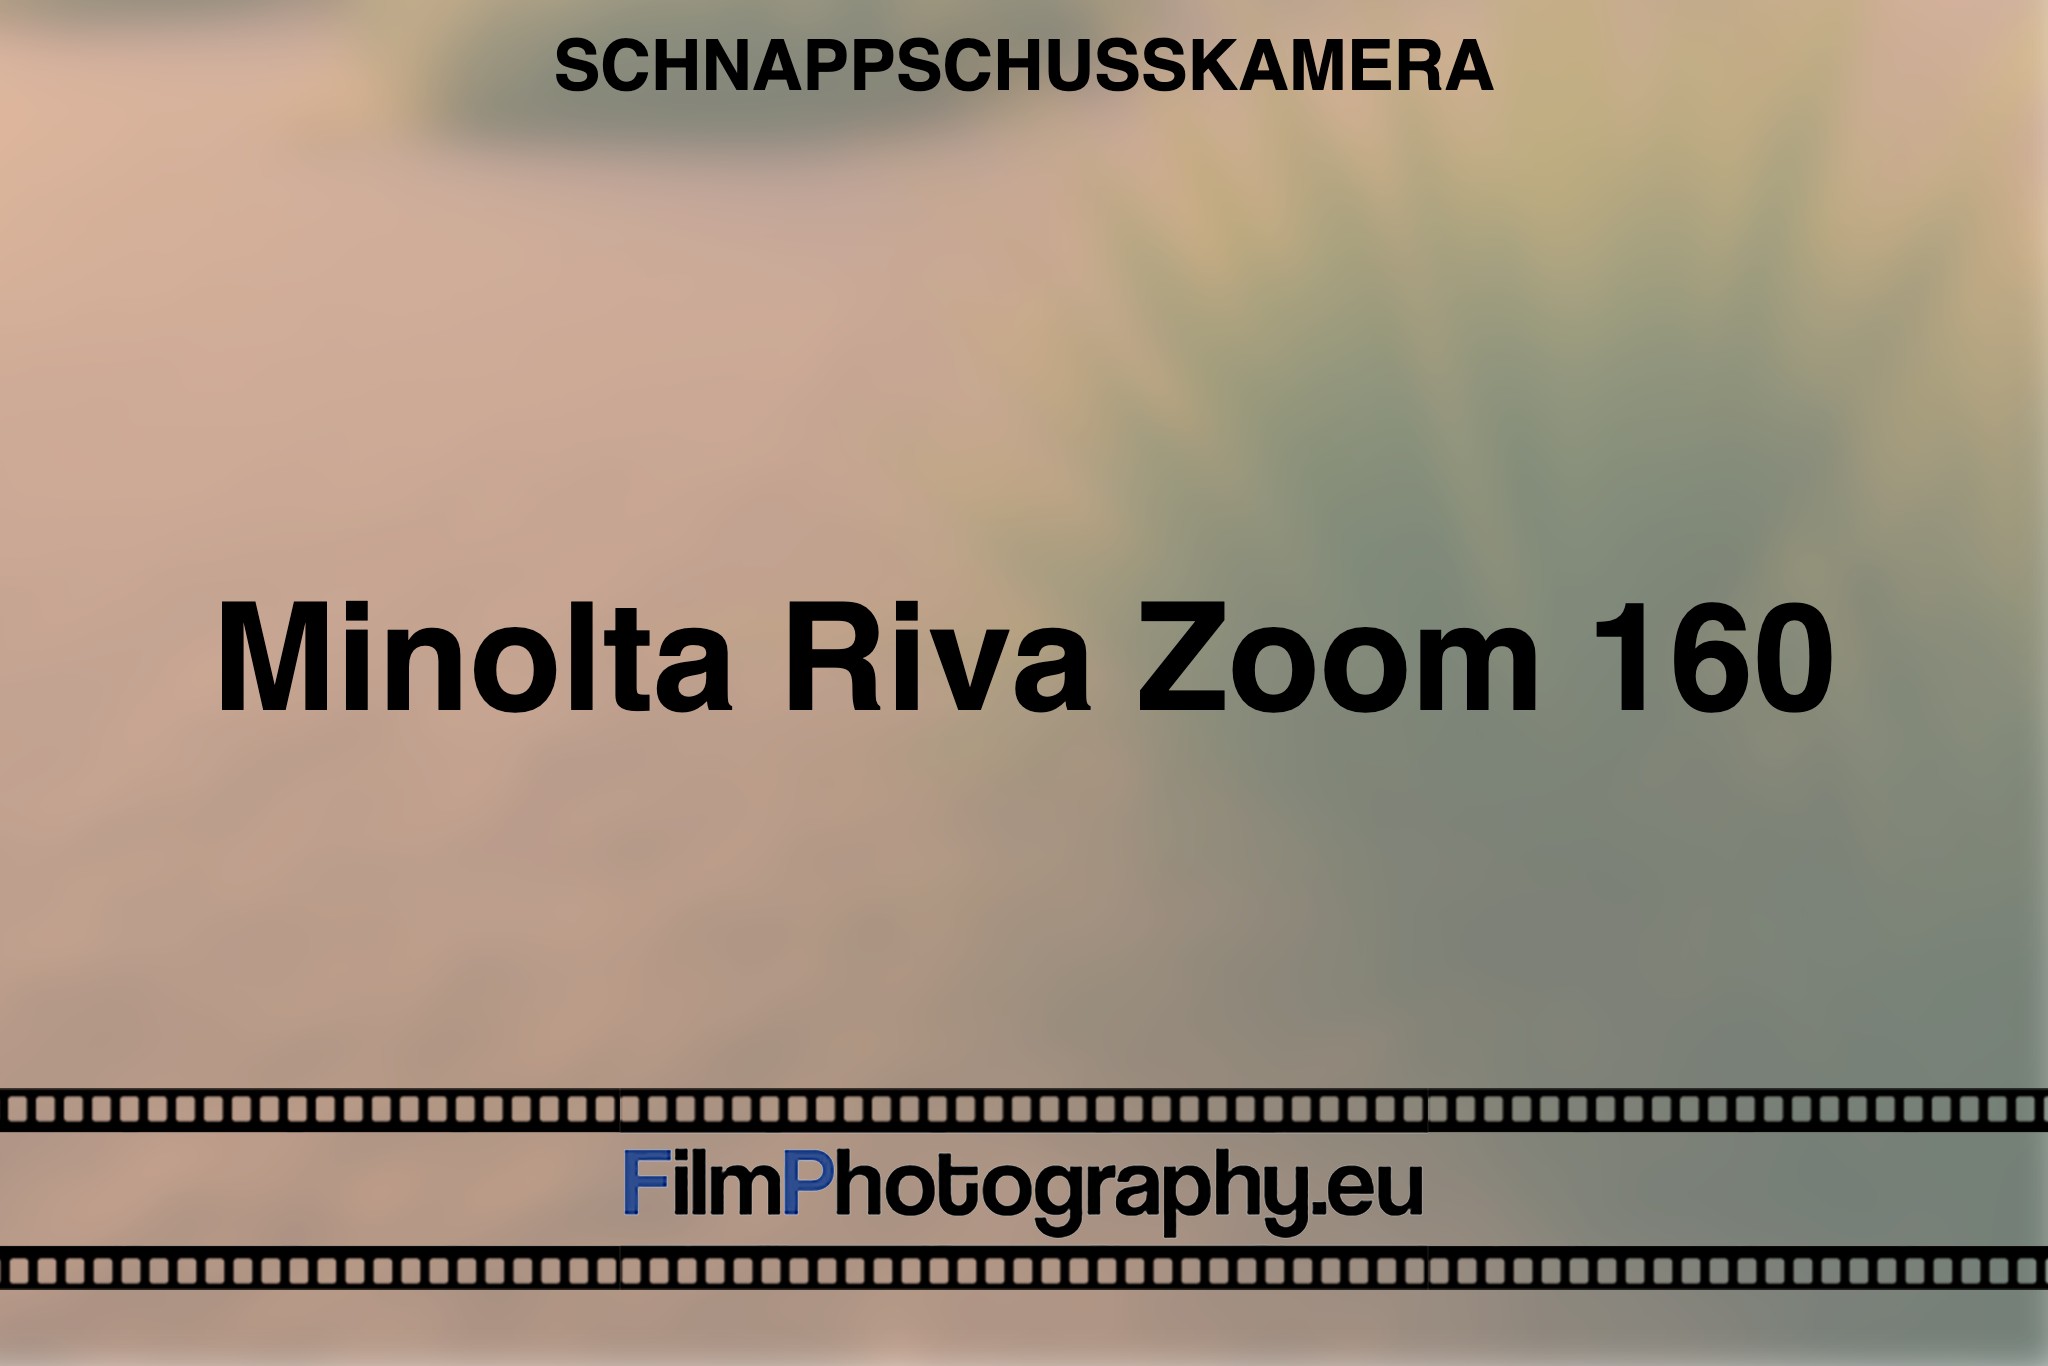 minolta-riva-zoom-160-schnappschusskamera-bnv